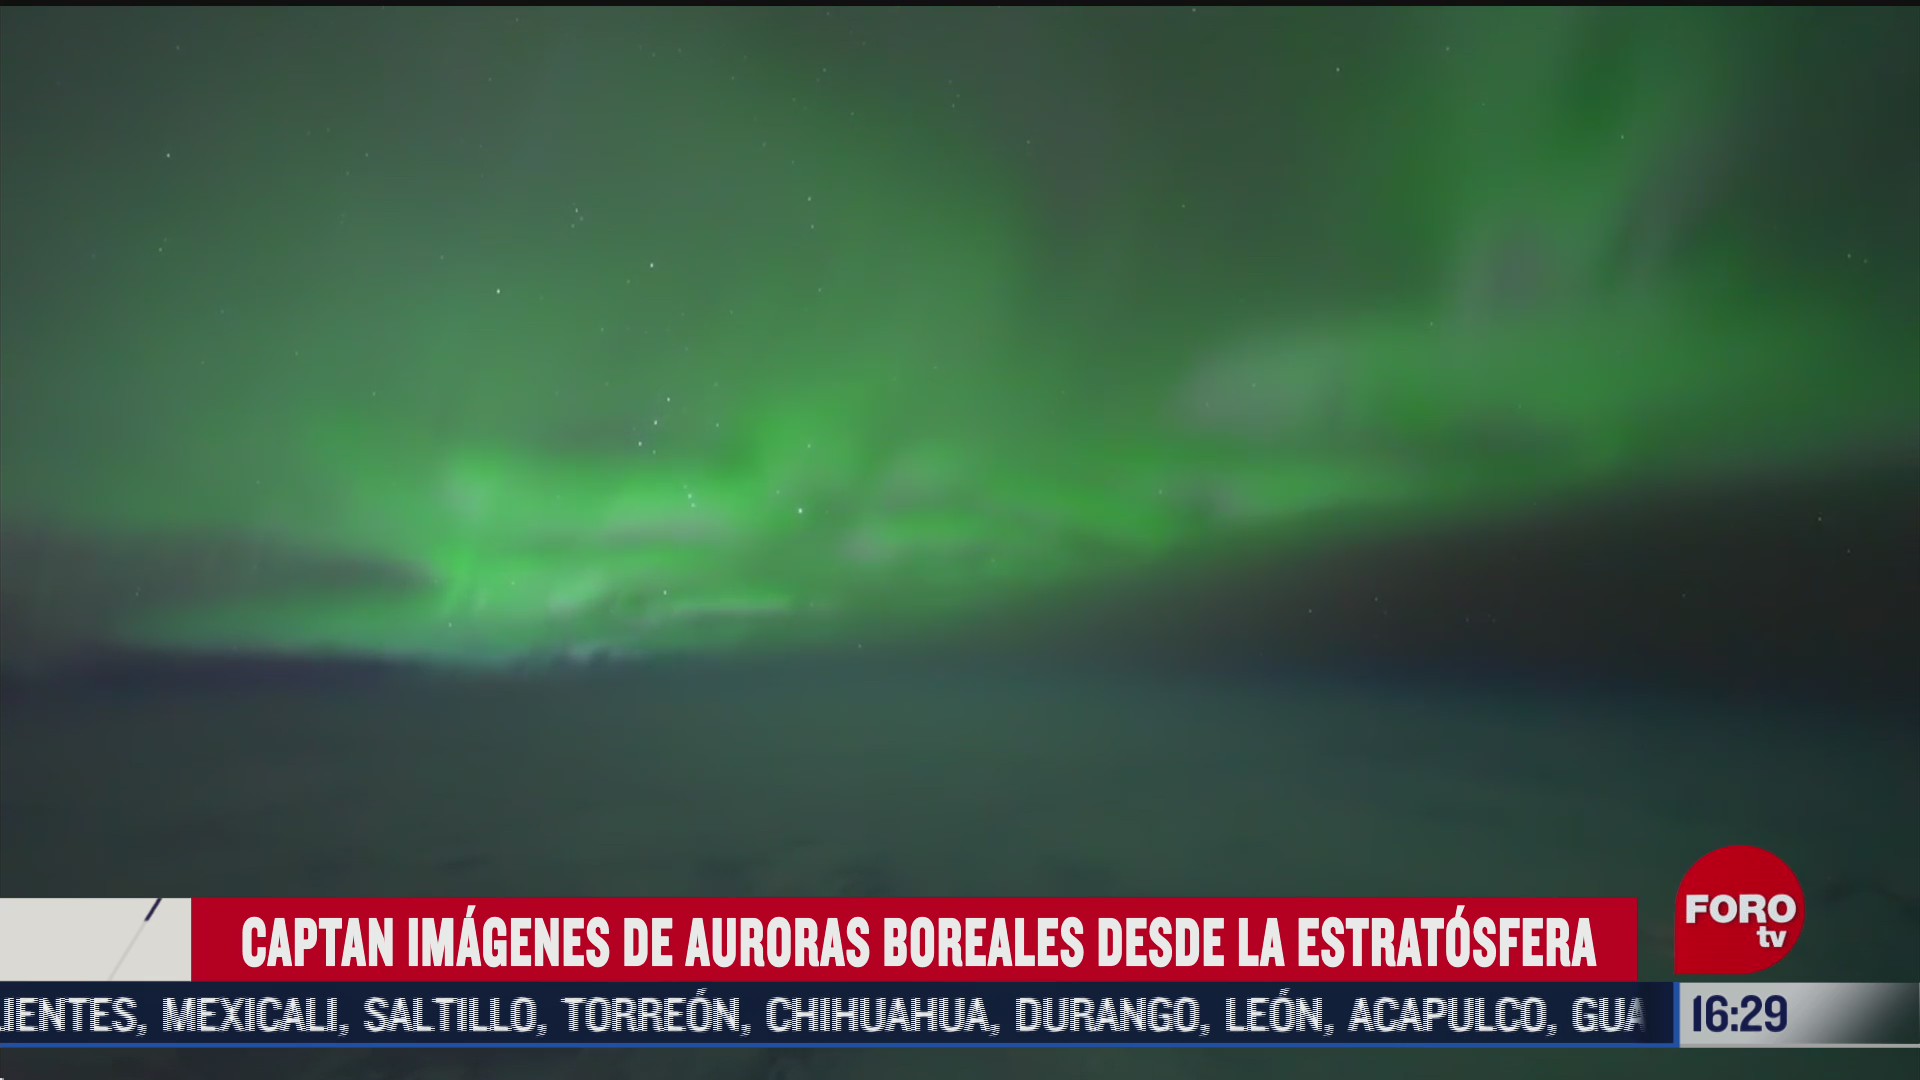 captan impresionantes imagenes de auroras boreales desde la estratosfera